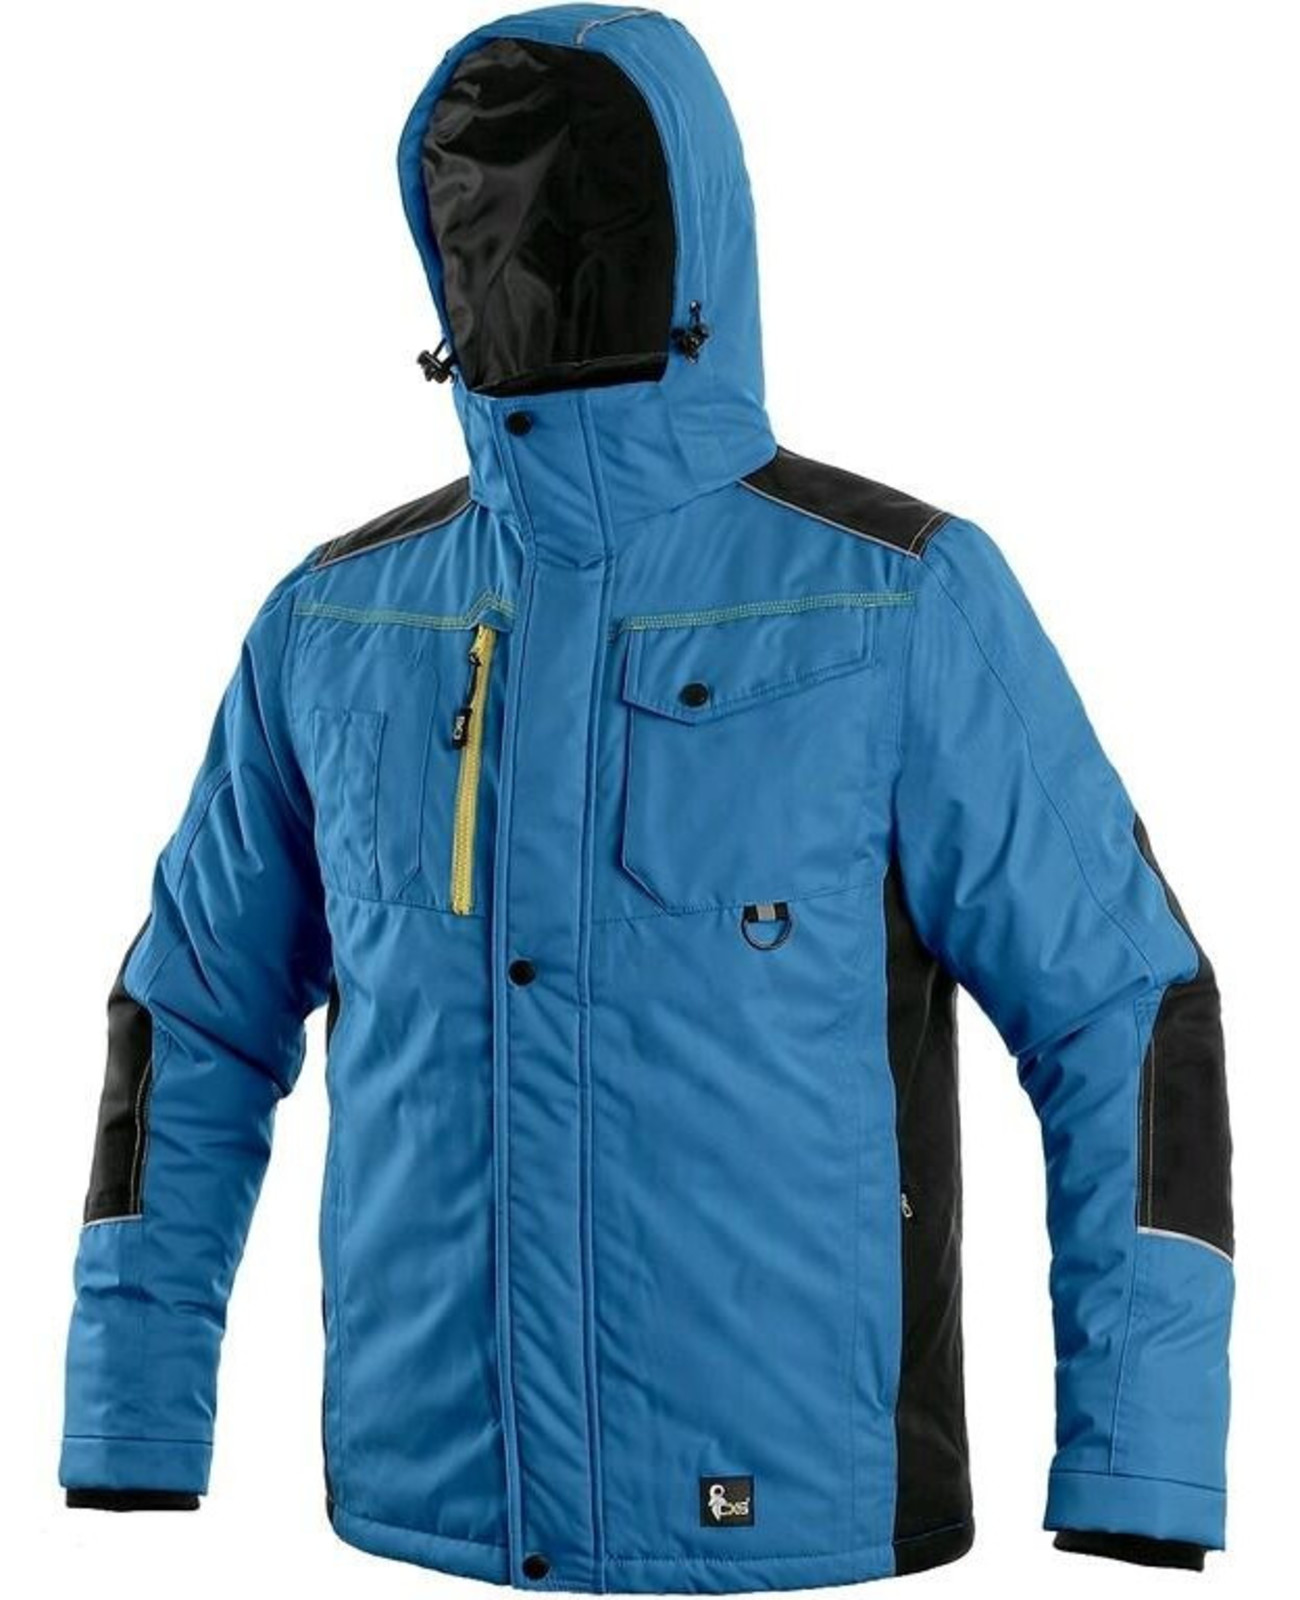 Zimná pracovná bunda CXS Baltimore - veľkosť: XL, farba: modrá/čierna